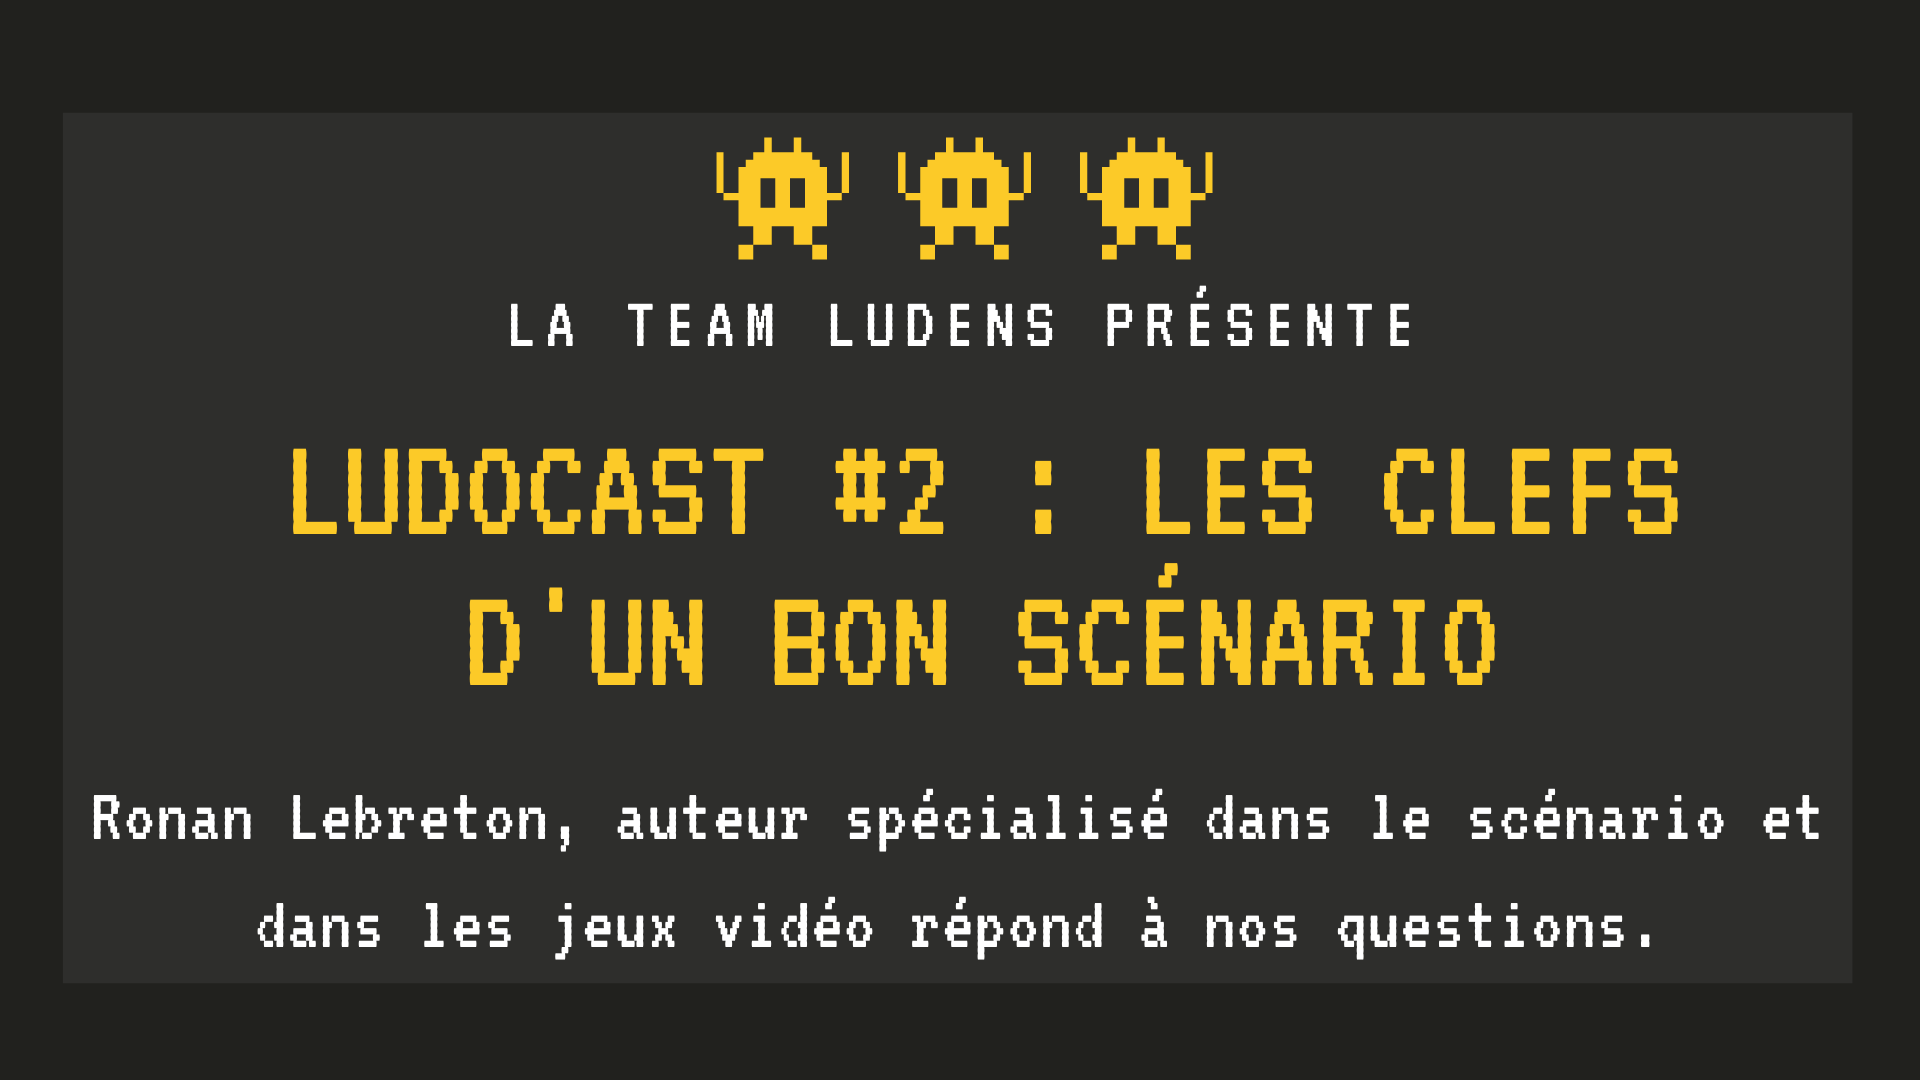 You are currently viewing Ludocast #2 : Les clefs d’un bon scénario (Ronan Lebreton)